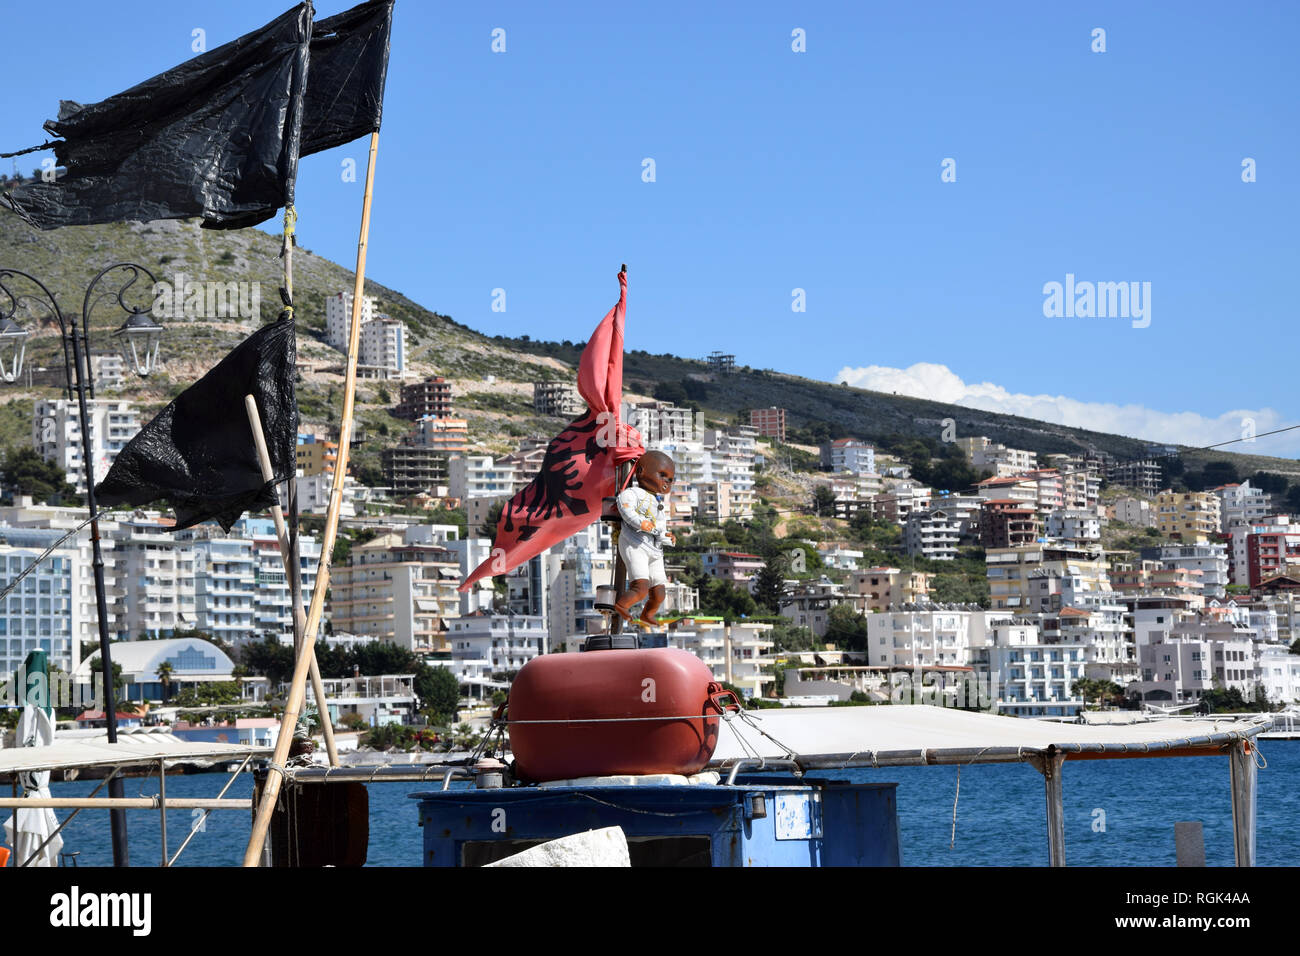 Albanische Tradition - Spielzeug hängen auf der Boot für bringt Glück. Saranda, Albanien Stockfoto